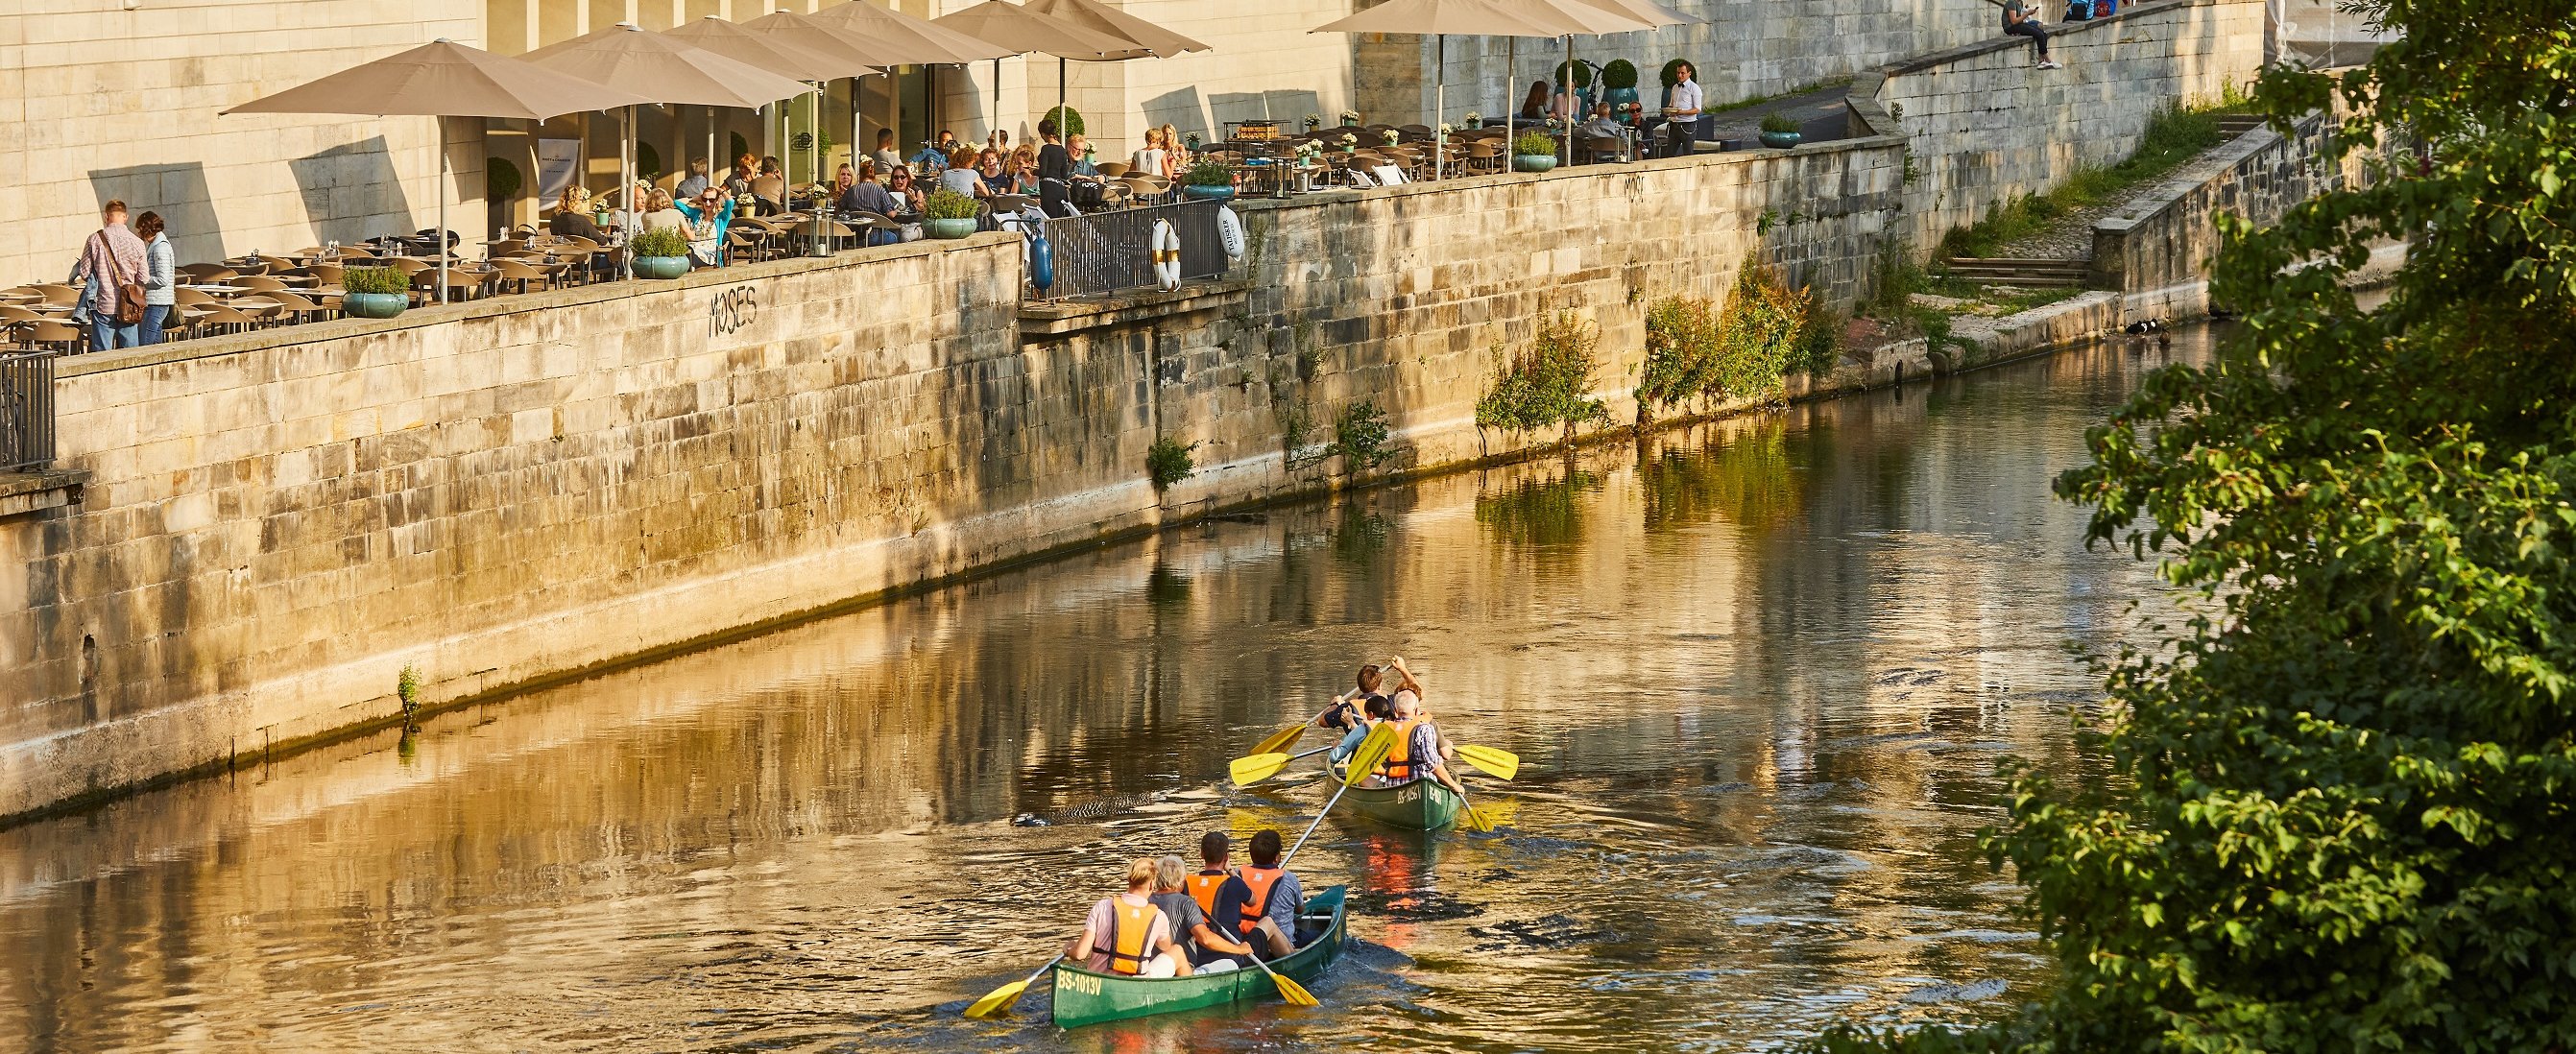 Zwei mit mehreren Personen besetzte Kanus treiben auf einem Fluss, der durch die Altstadt von Hannover führt. 